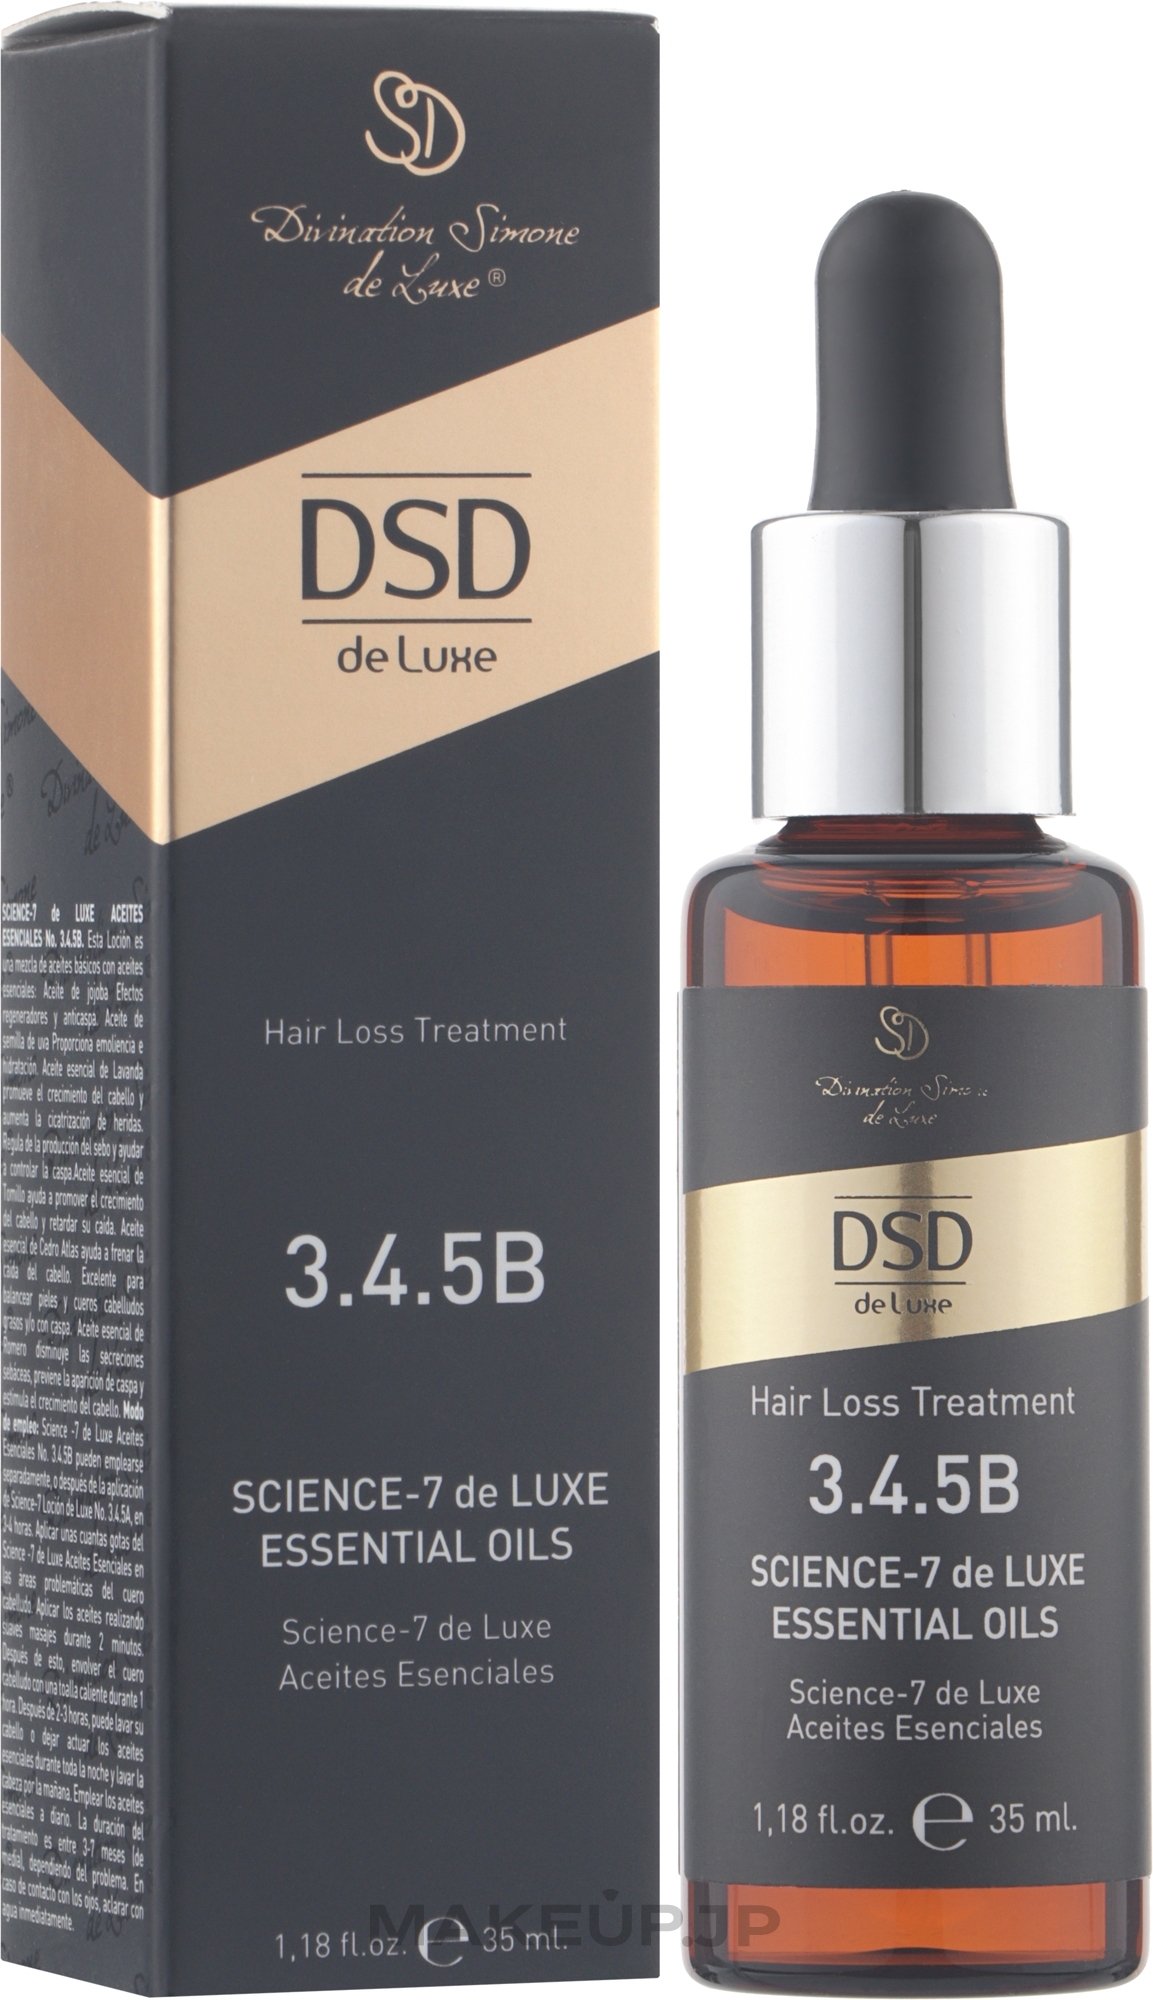 Science-7 Essential Oil #3.4.5B - Divination Simone De Luxe Science-7 DeLuxe Essential Oils — photo 35 ml